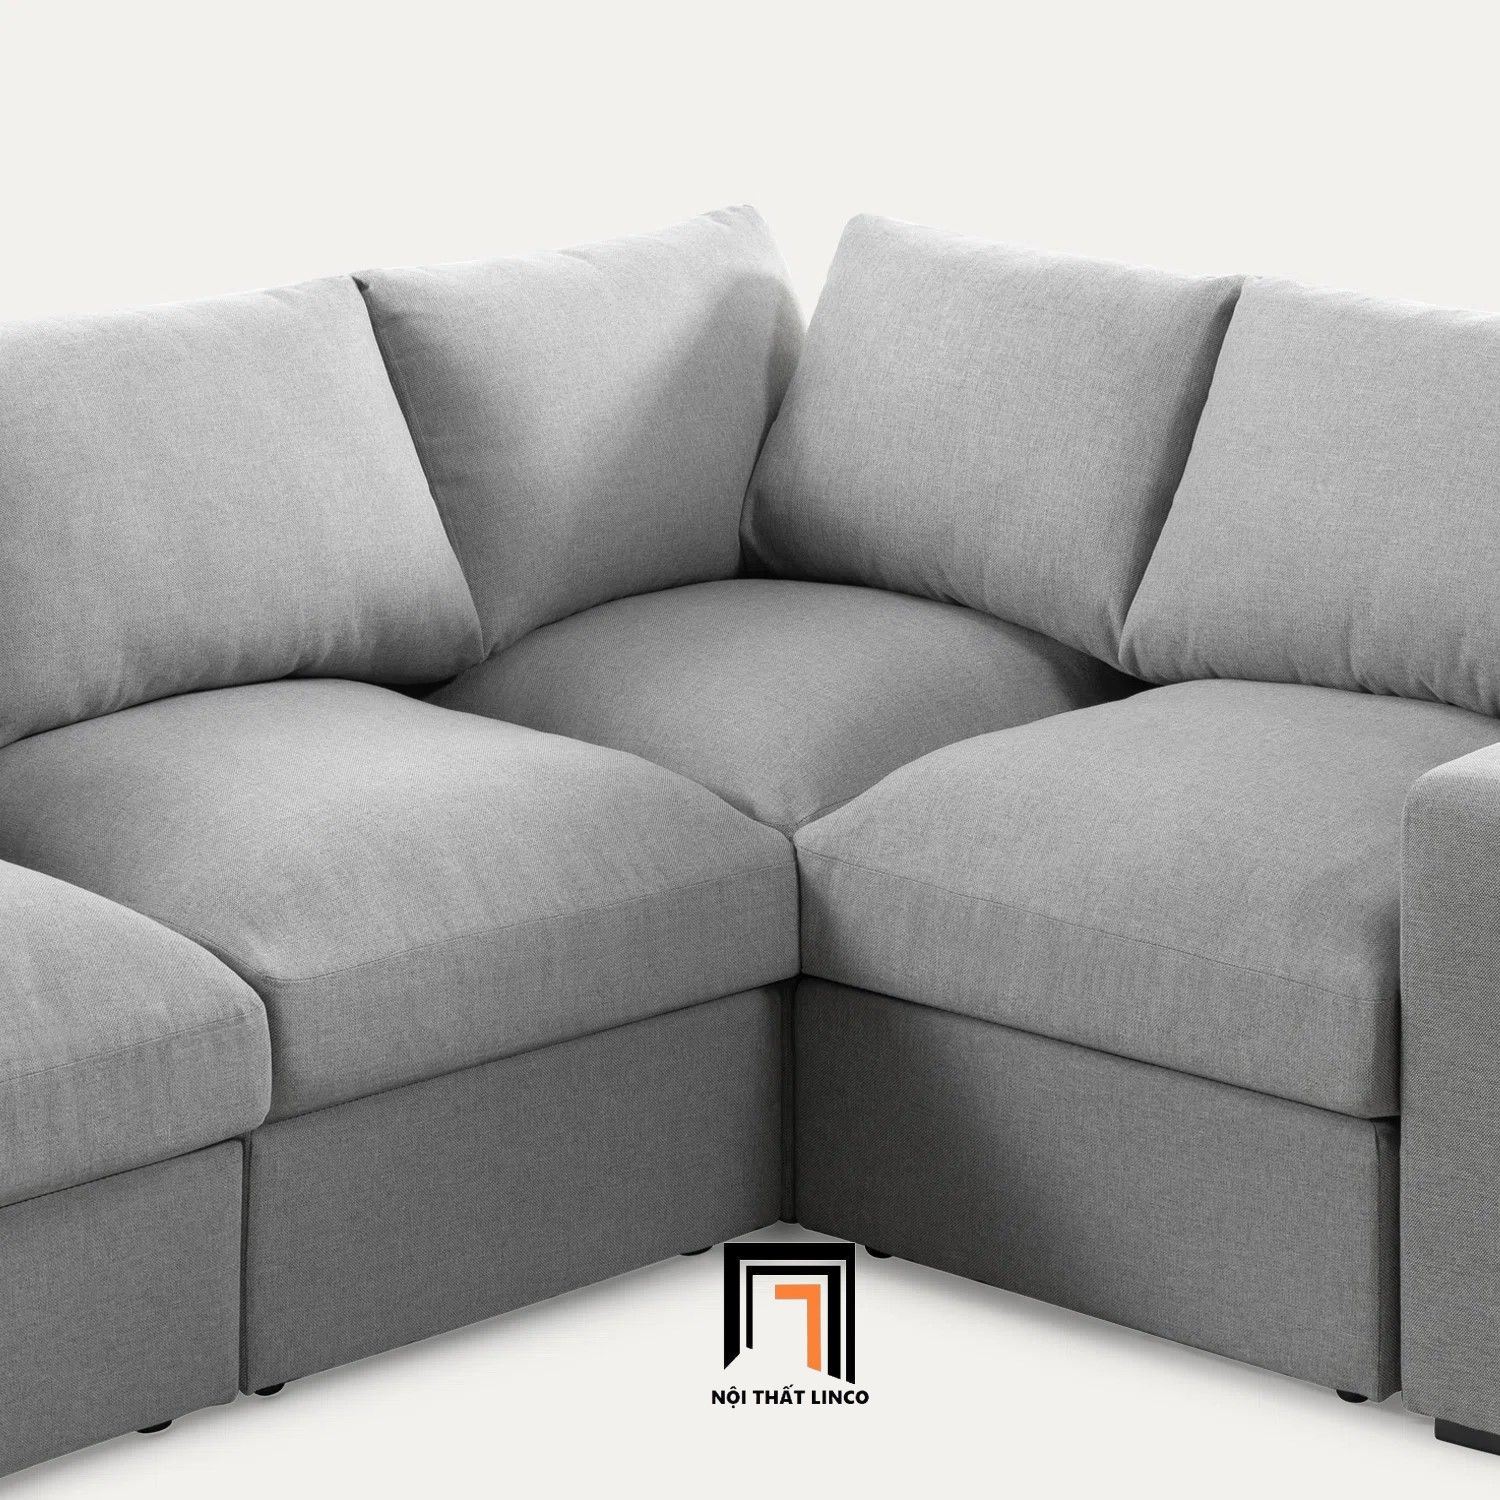  Bộ ghế sofa góc L GT23 Reversible 2m2 x 1m6 giá rẻ 